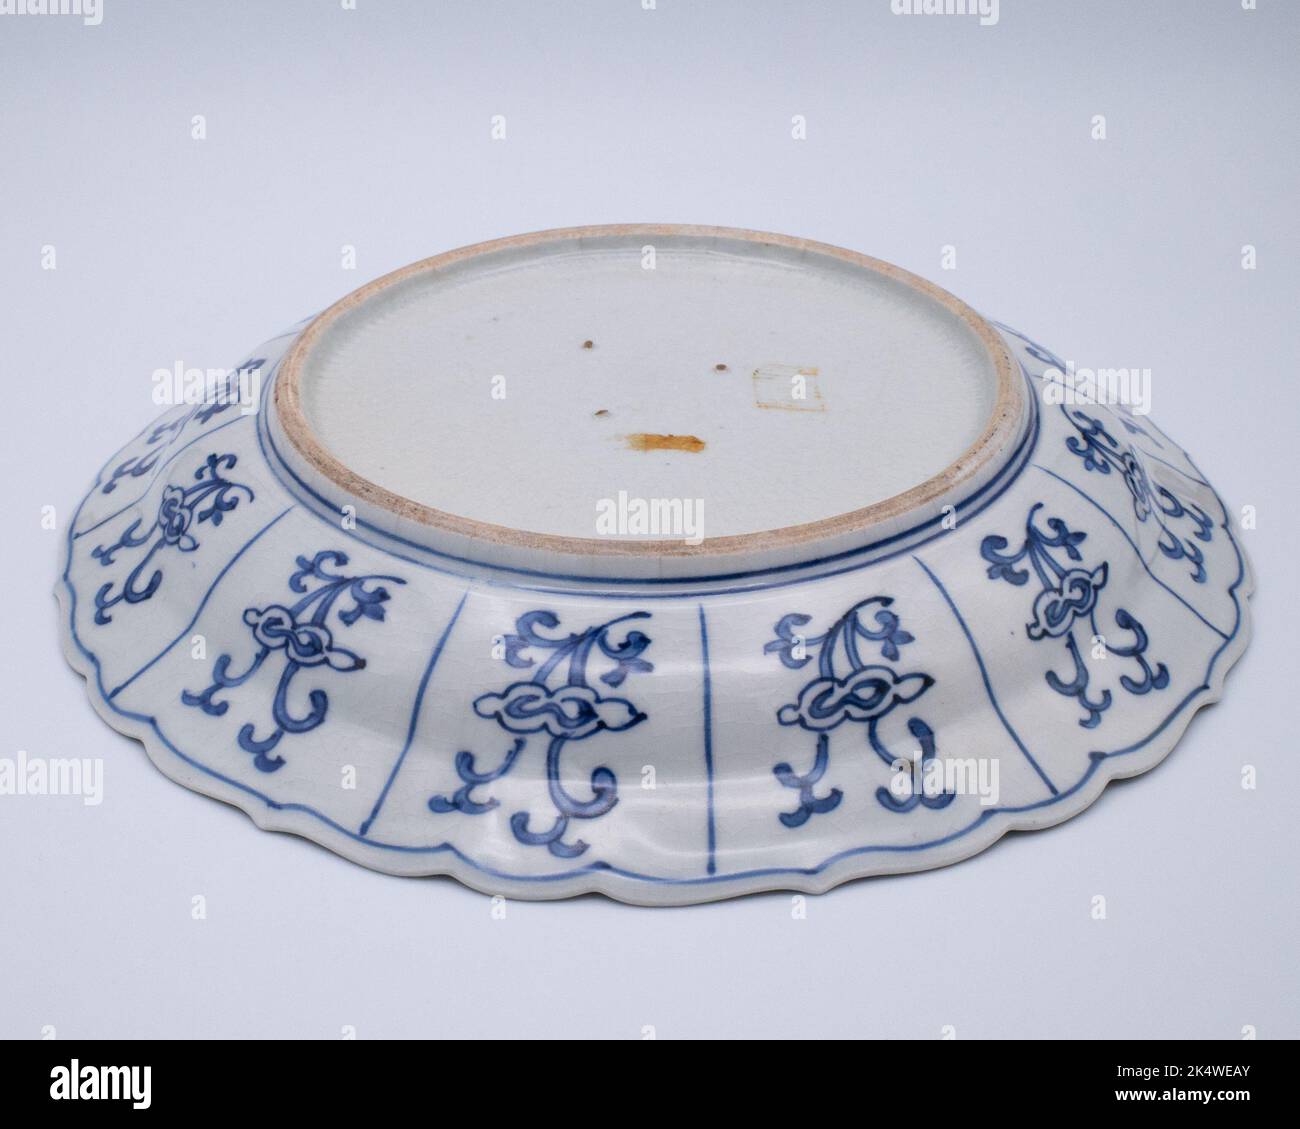 Plat, plat peu profond - Bleu et blanc, fuyo-de - porcelaine - oiseau - Antique Japanese Kraak style plat en porcelaine avec bordure festonnée - Japon - période Edo Banque D'Images